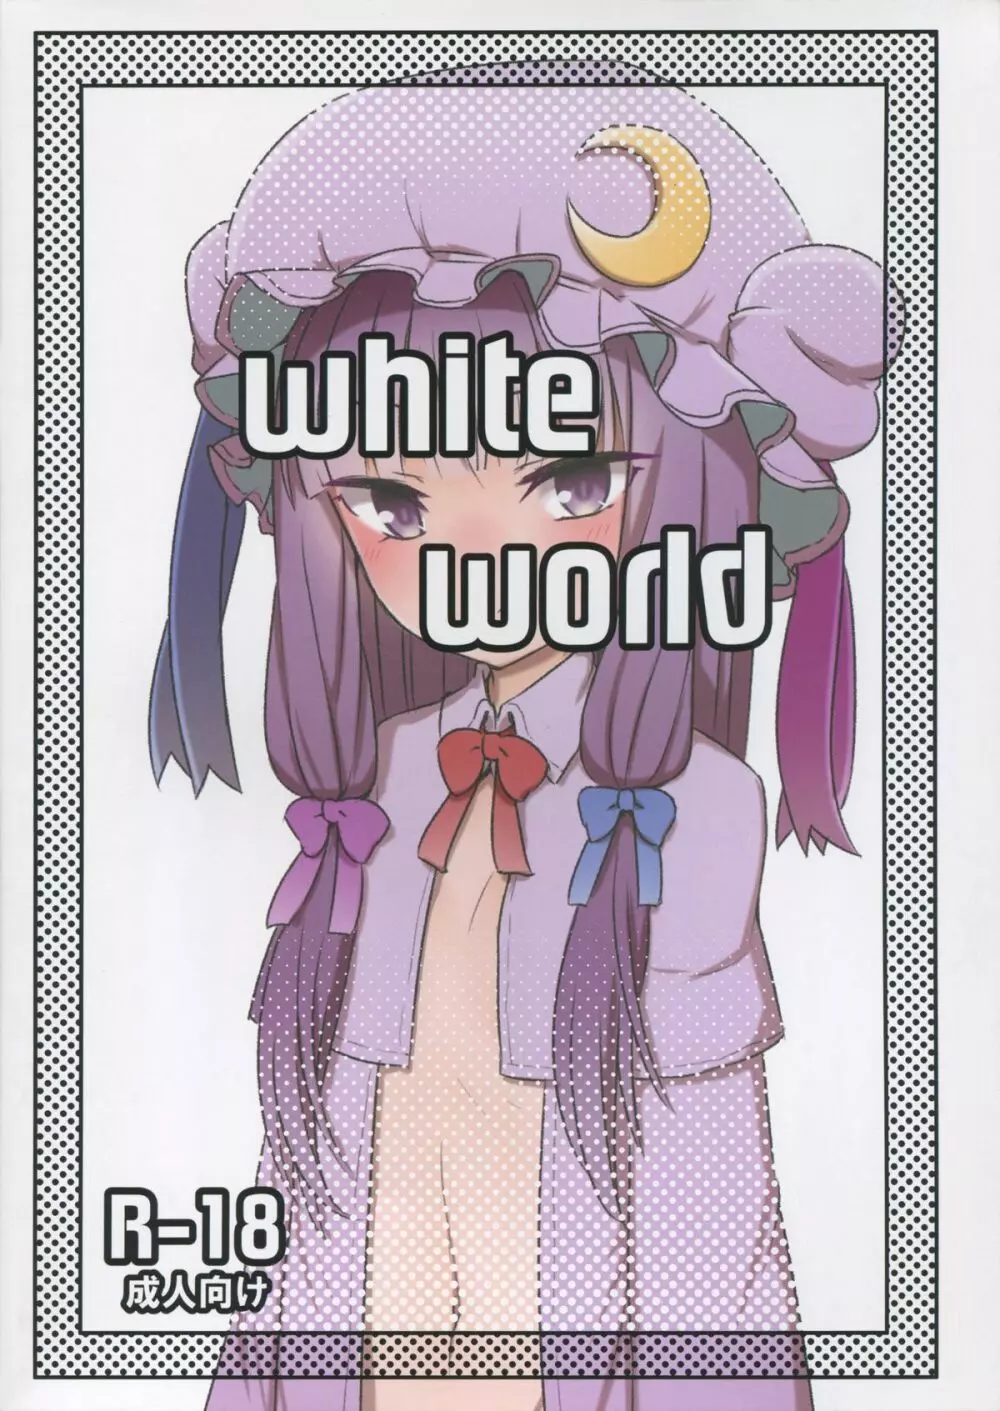 White World